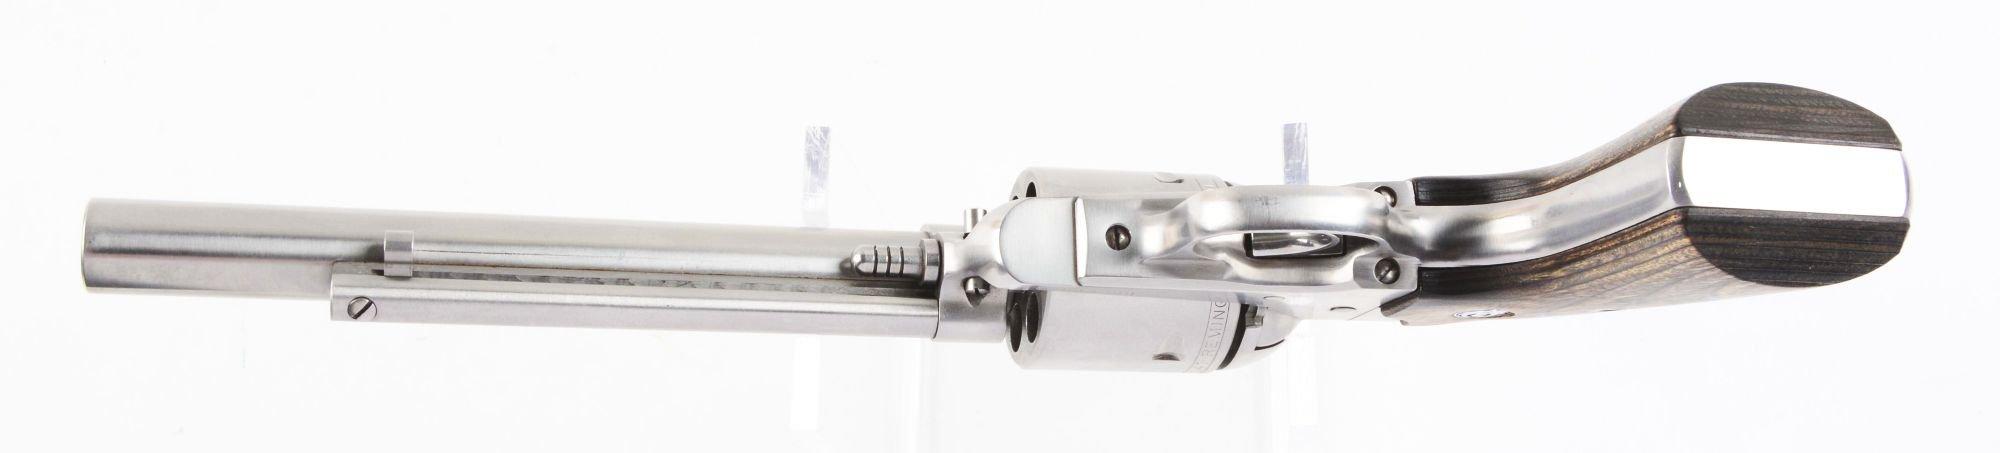 (M) Rare Stainless Ruger New Model Super Blackhawk Bisley Hunter (.41 Magnum).